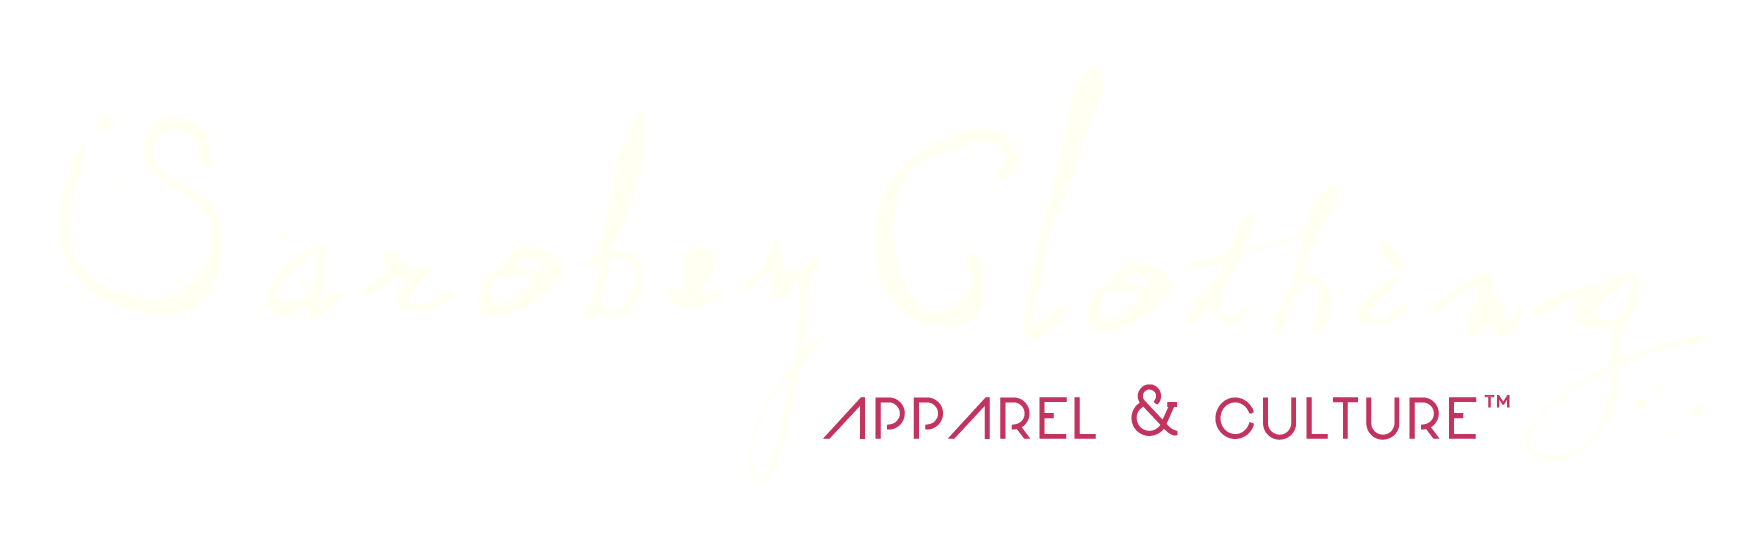 Sarobey Clothing Logo White Transparent 1744 x 544